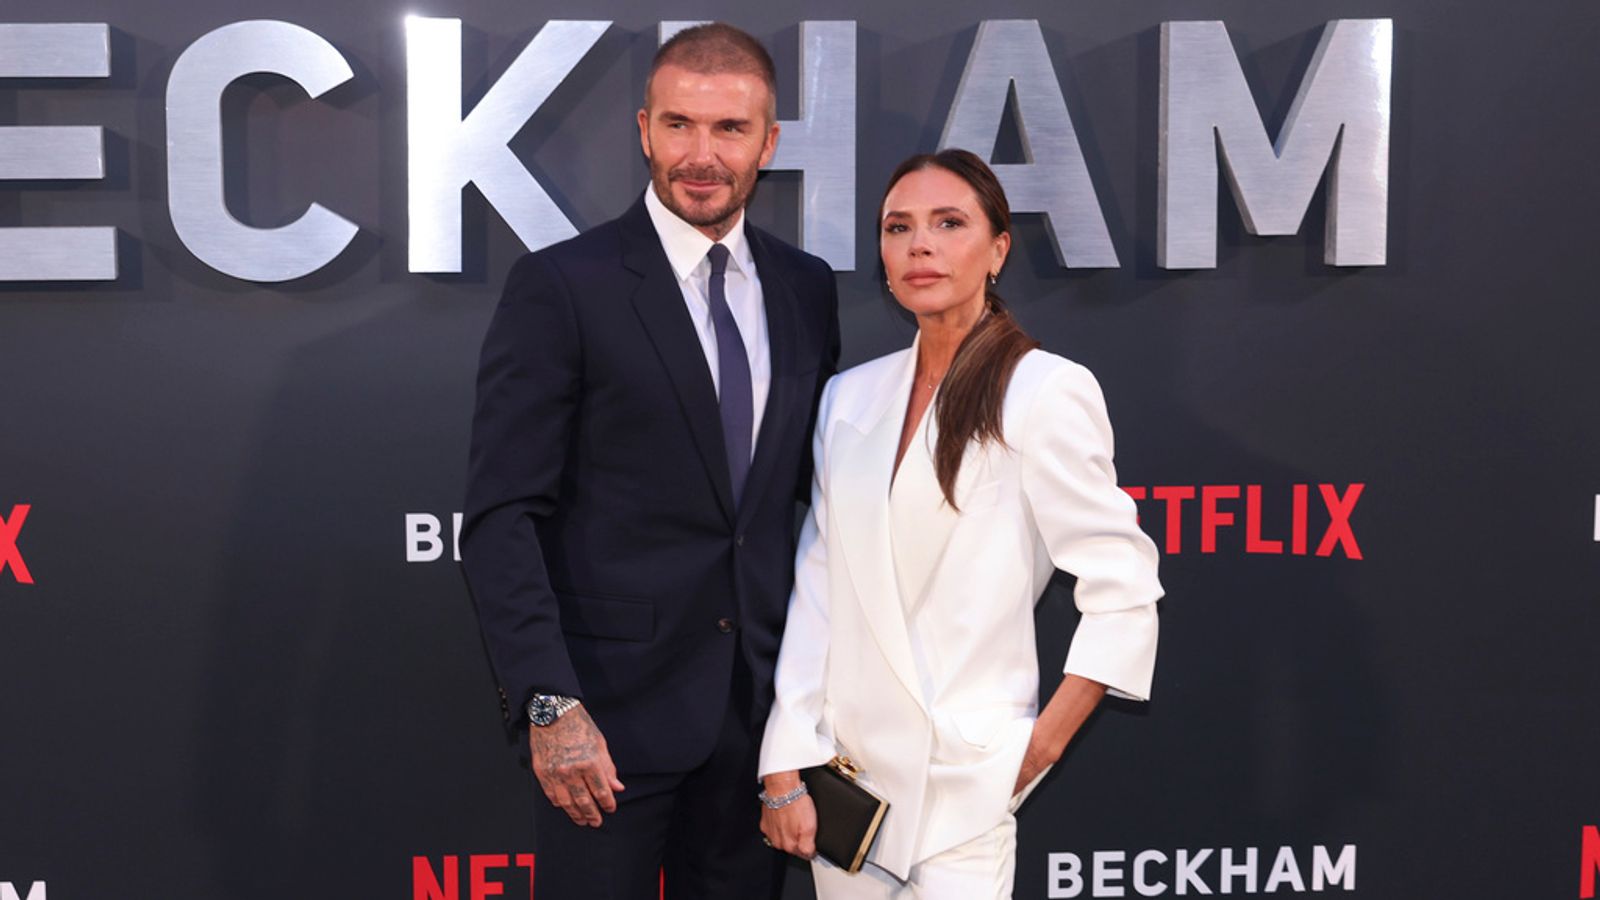 David Beckham defends Qatar ambassador role at World Cup despite LGBTQ+ rights criticism